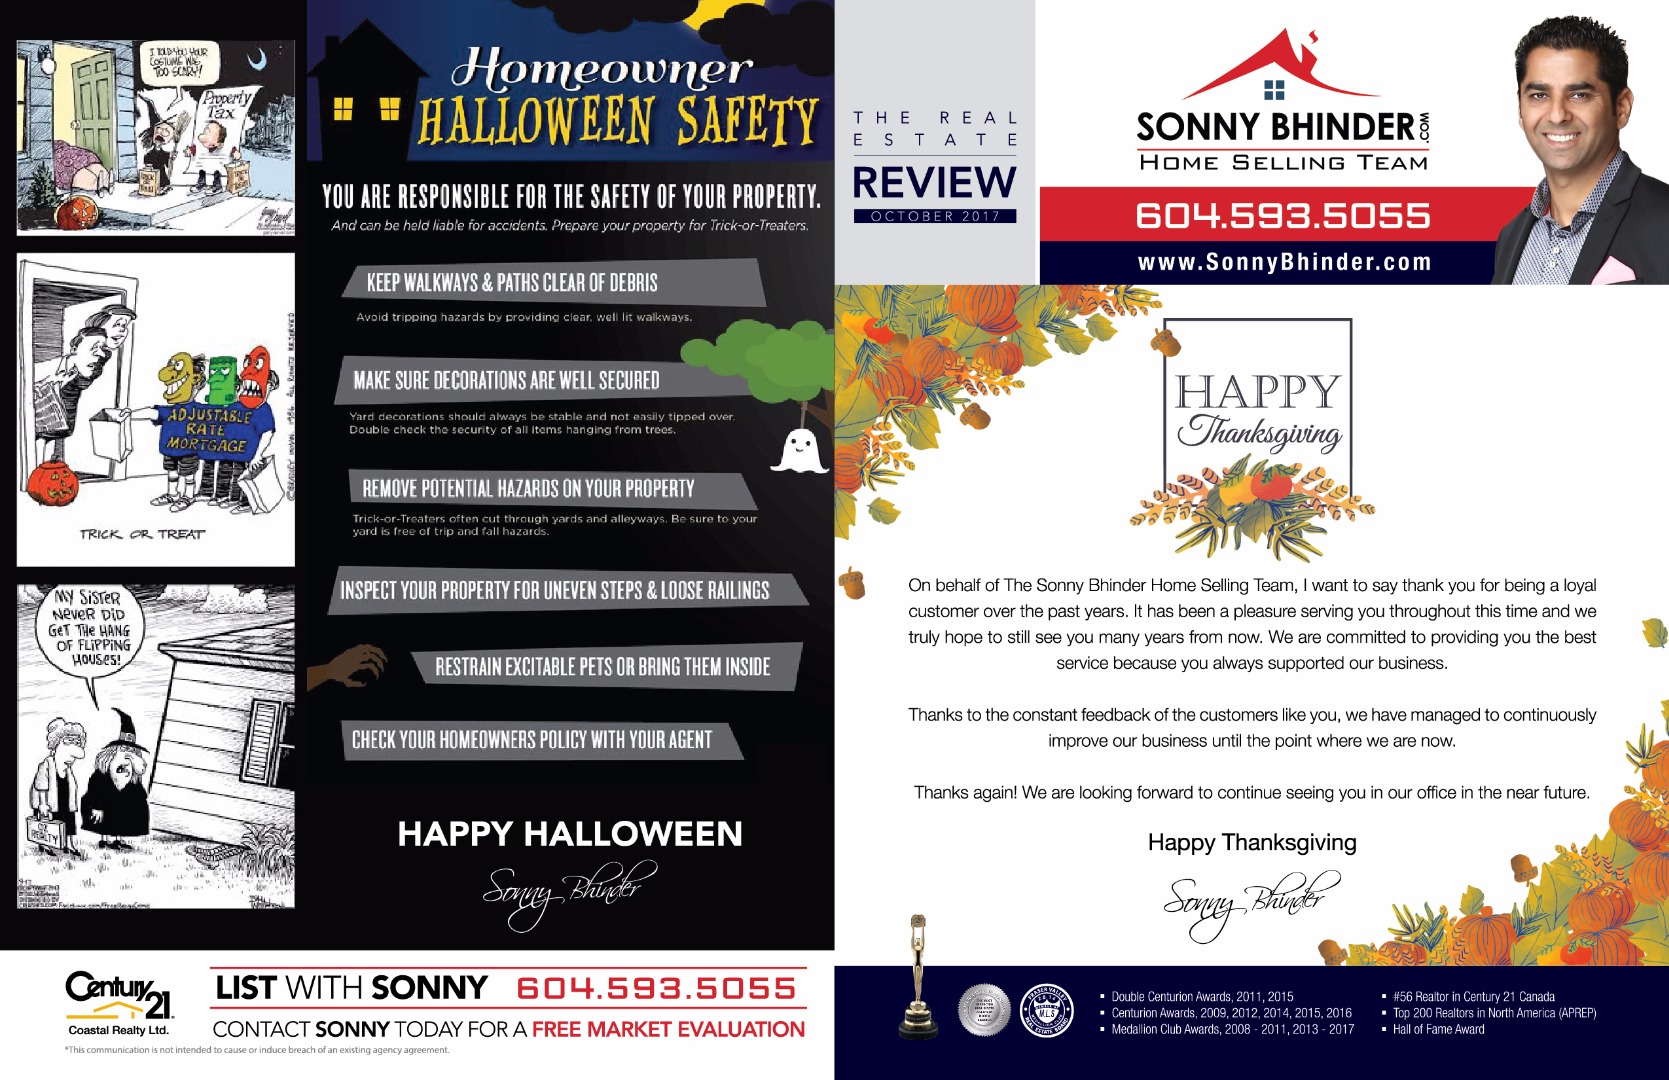 20170928 Sonny Bhinder - October Newsletter Design Cover-01.jpg